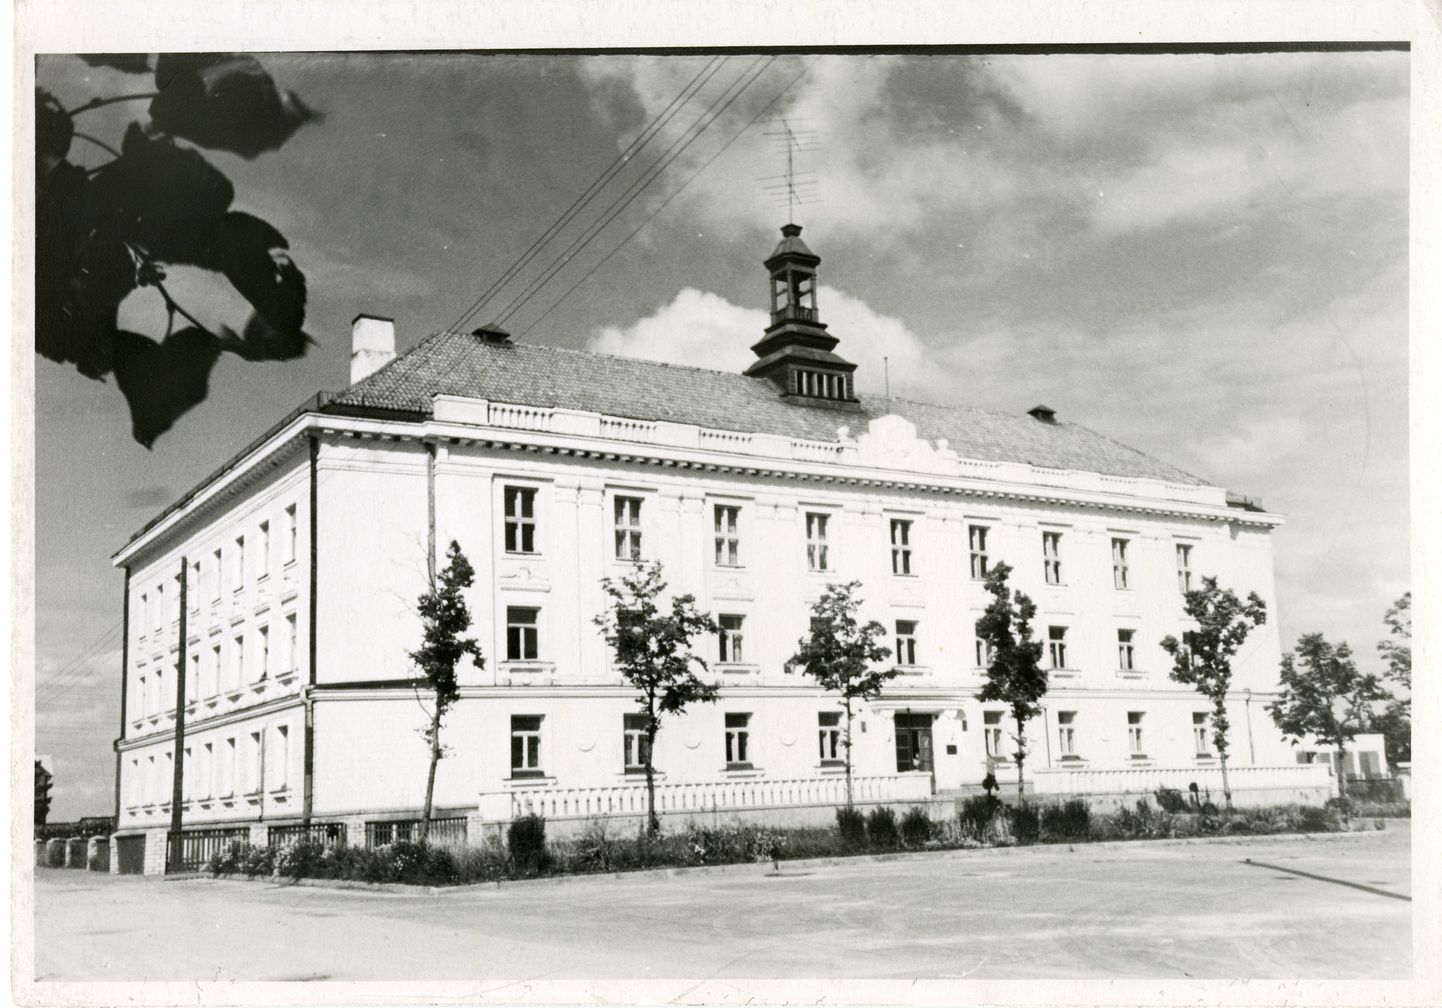 Orissaare internaatkool 1961. aastal.
M. Kald/SAAREMAA MUUSEUM